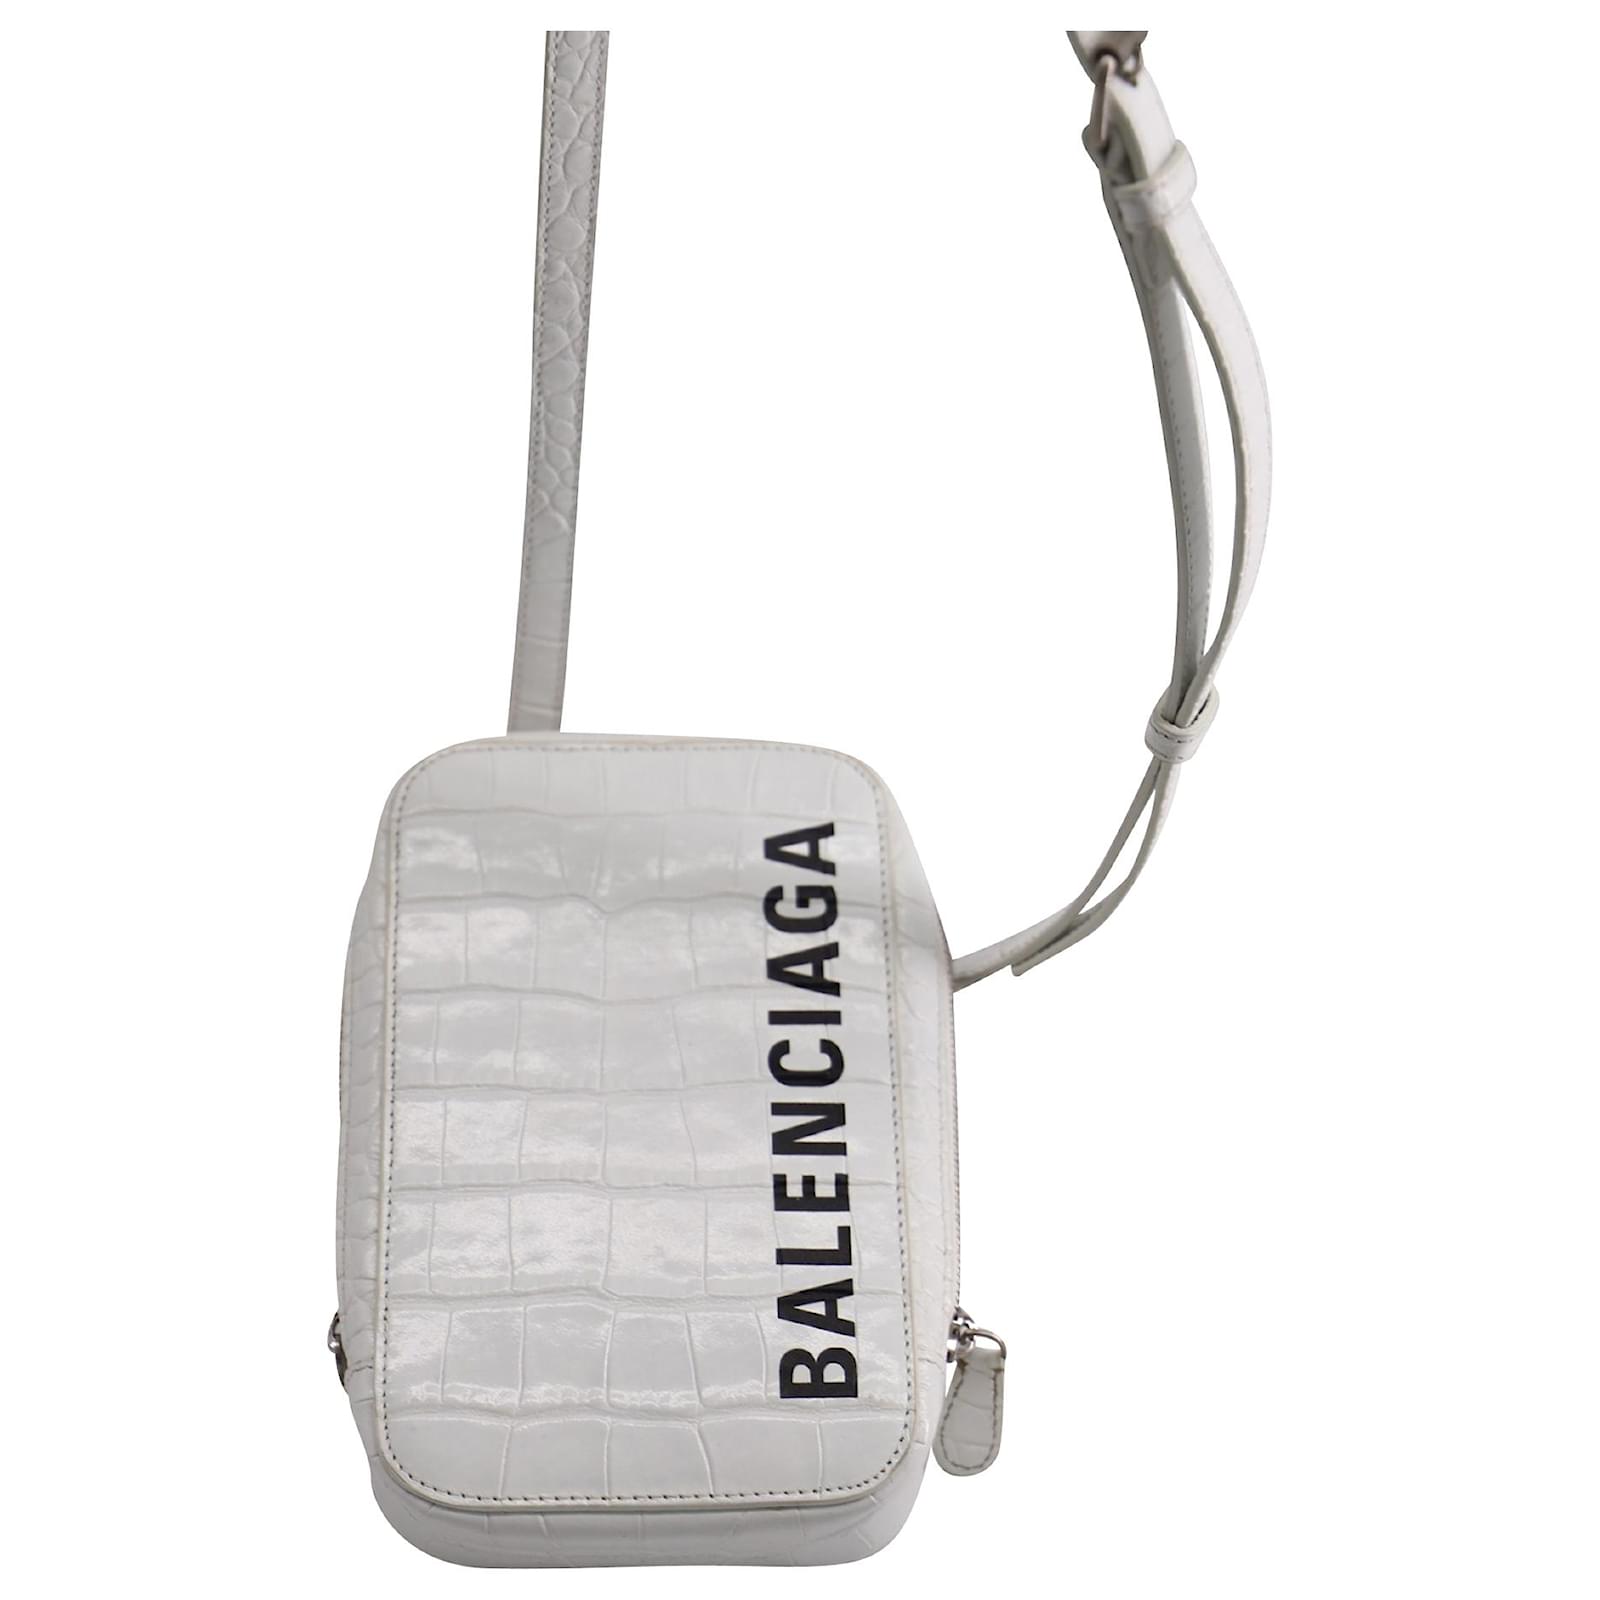 Balenciaga Everyday Monogram Camera Bag